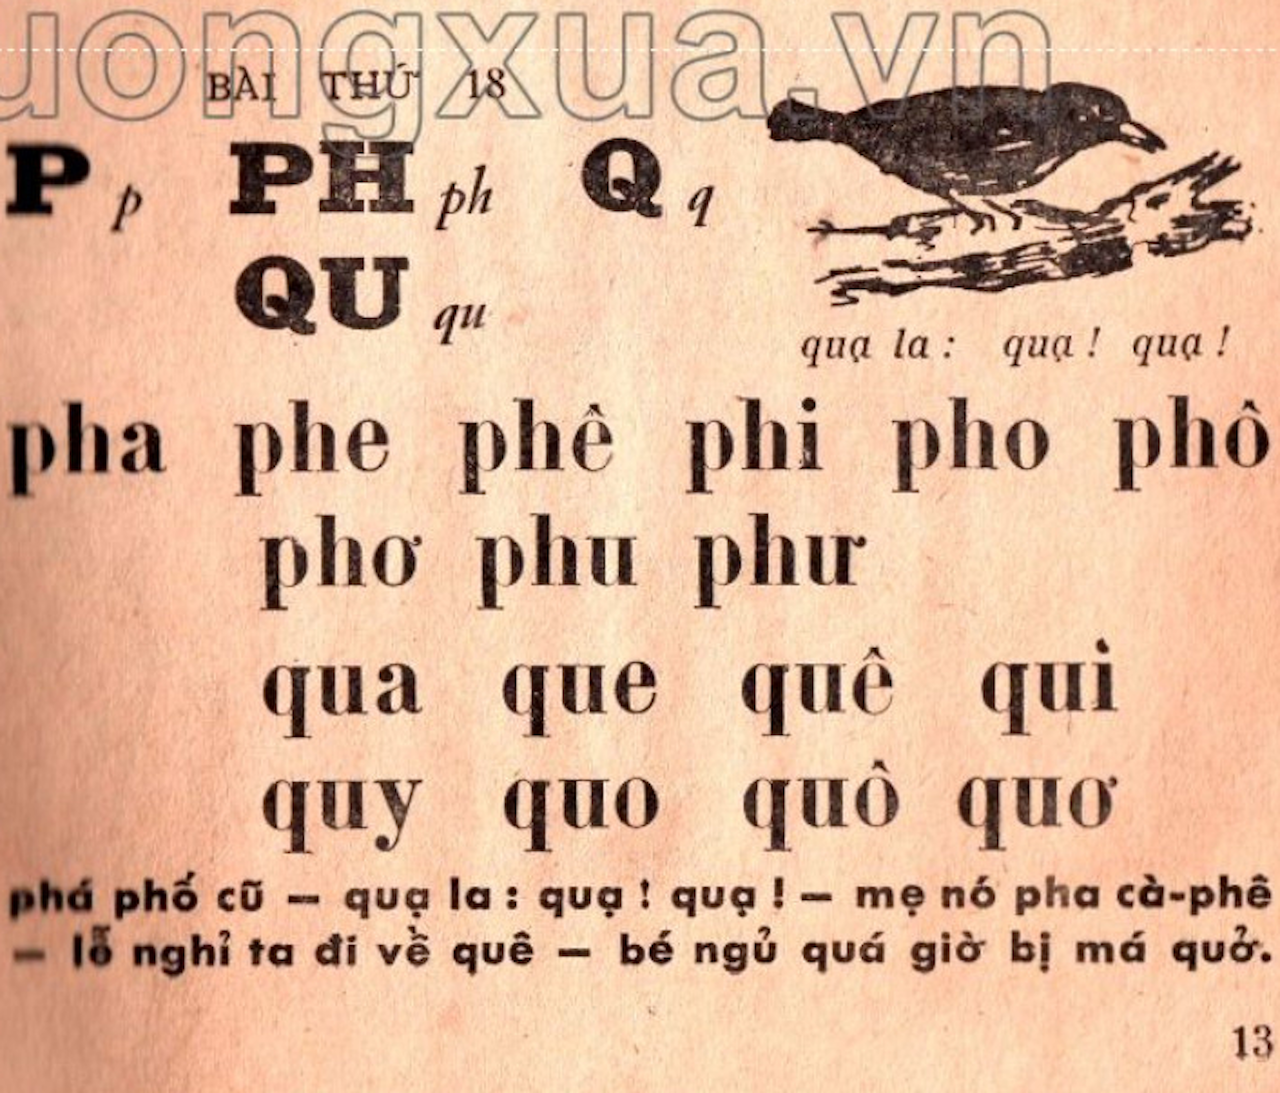 Tiếng Việt 1 không dạy chữ P: 'Cải tiến hoá cải lùi, sai lầm nghiêm trọng' - 3